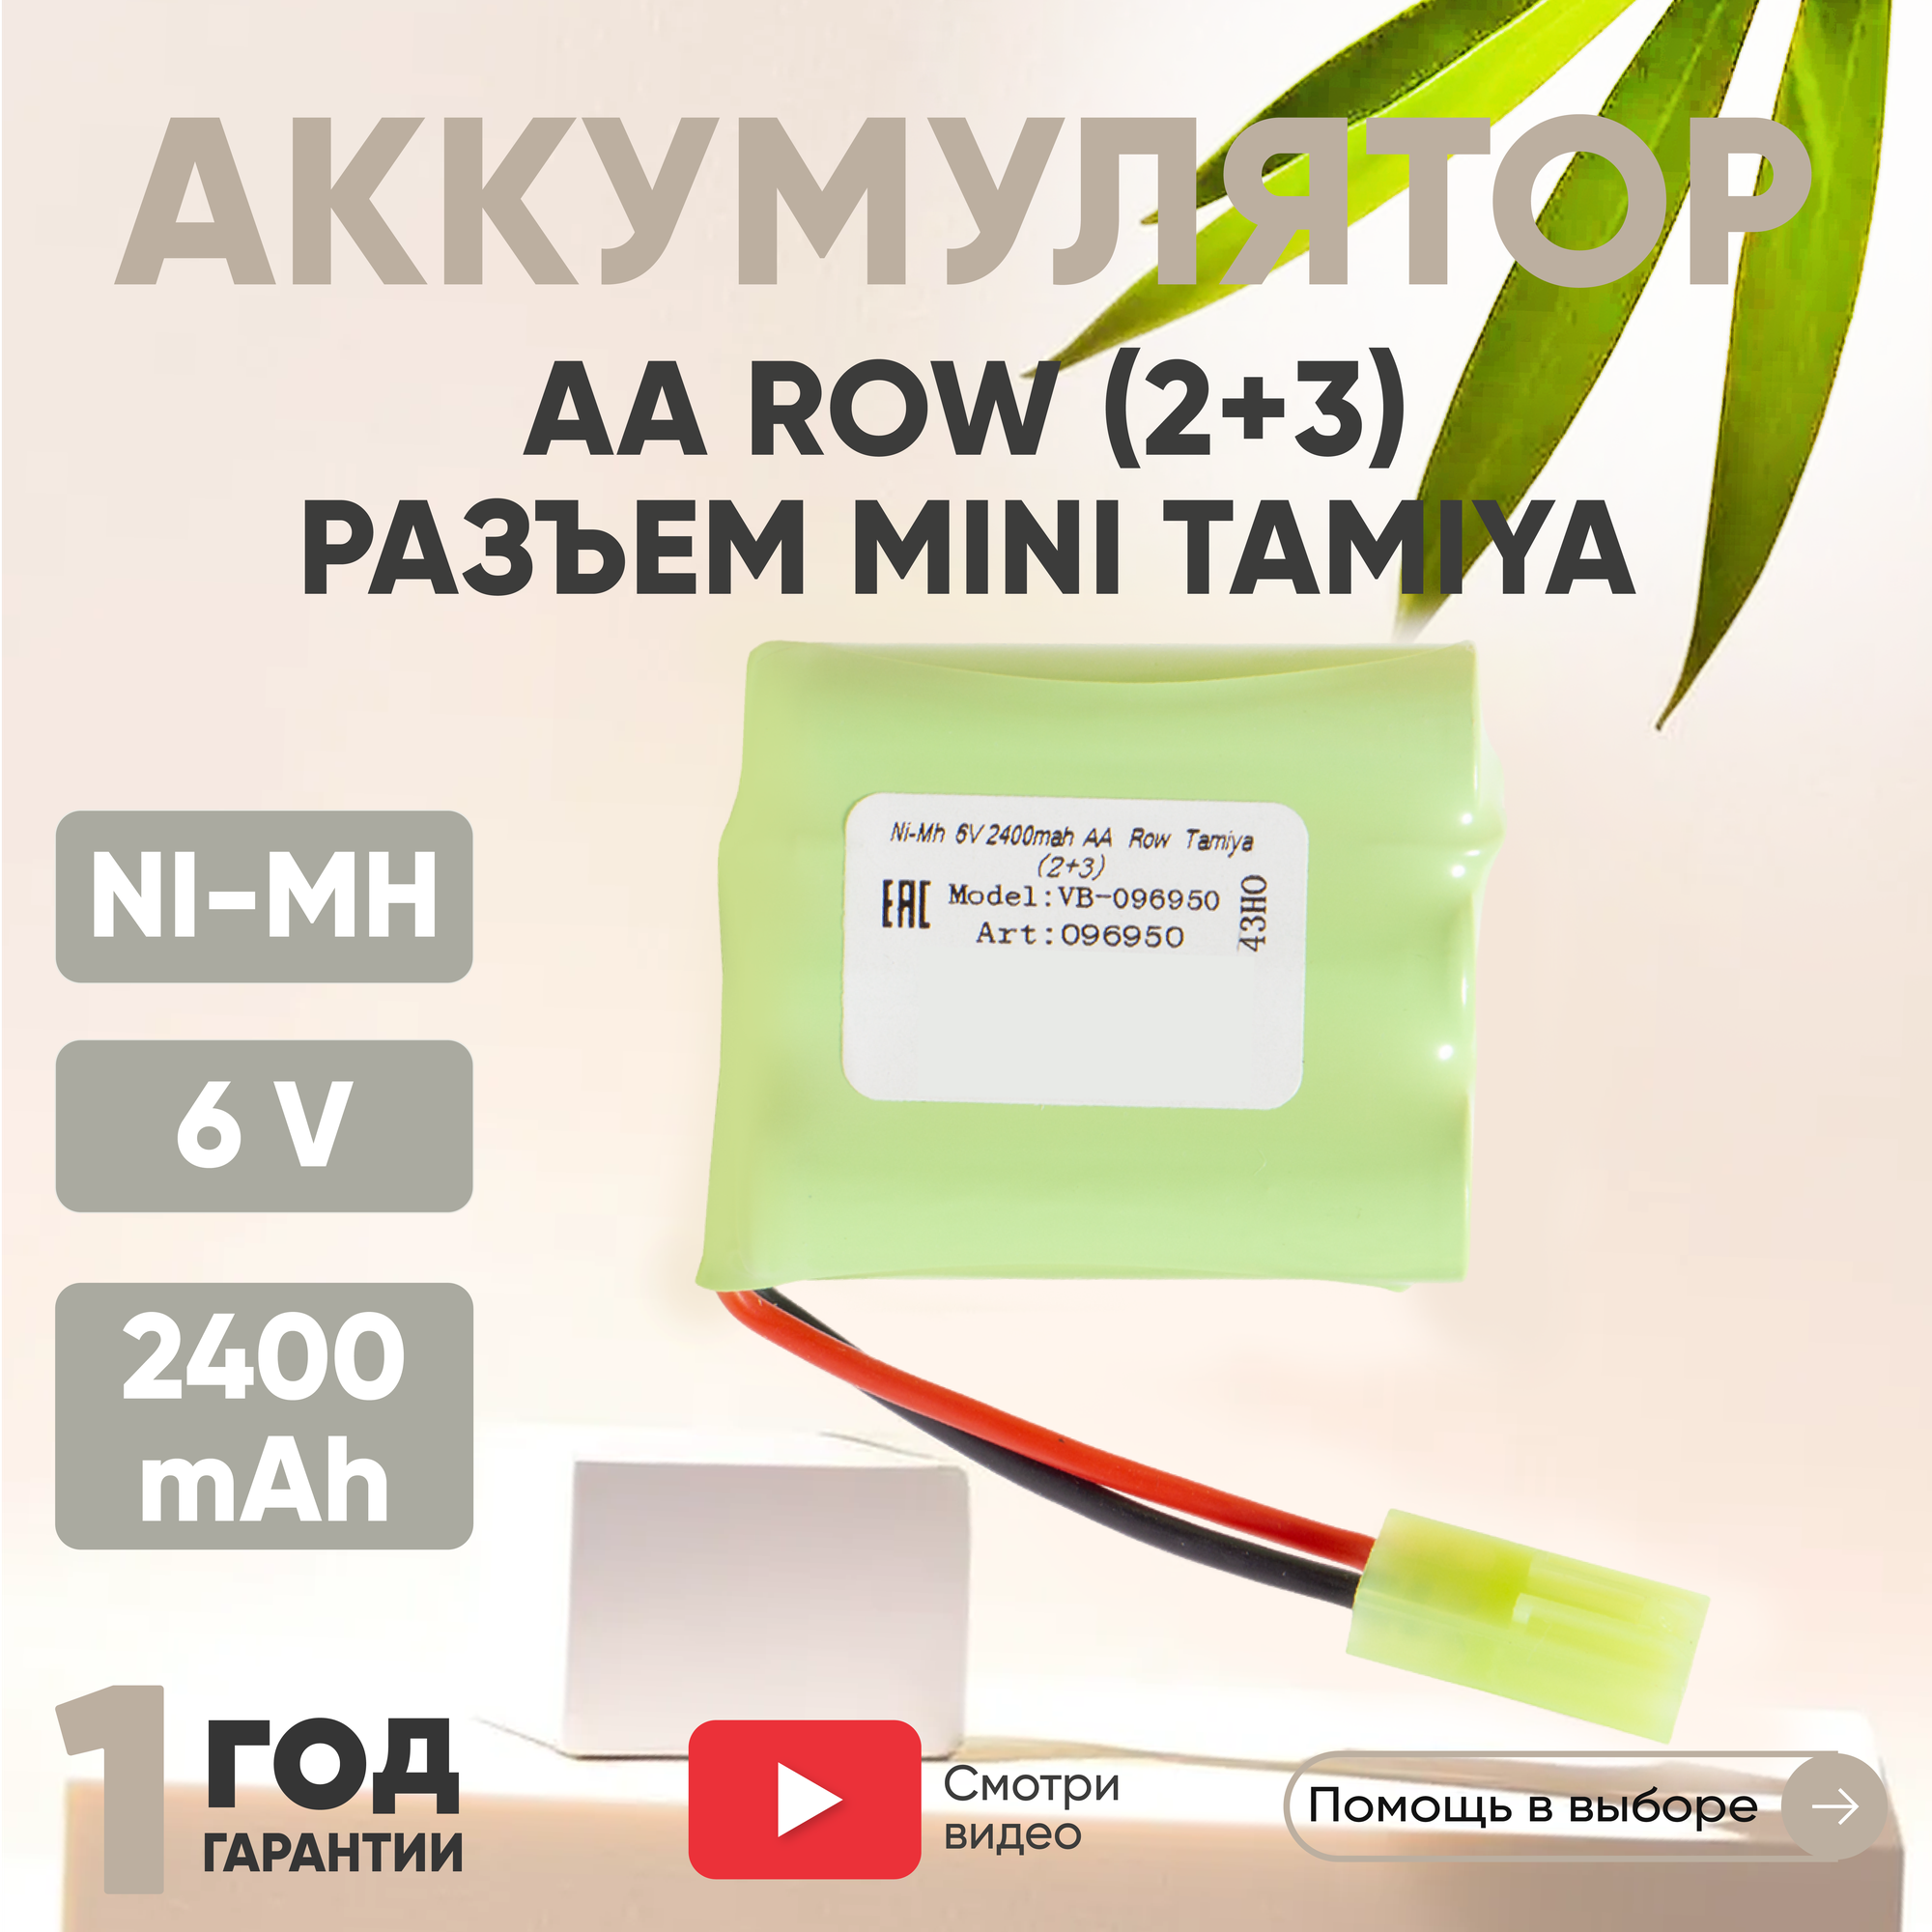 Аккумуляторная батарея (АКБ, аккумулятор) AA Row, разъем Tamiya (2+3), 2400мАч, 6В, Ni-Mh